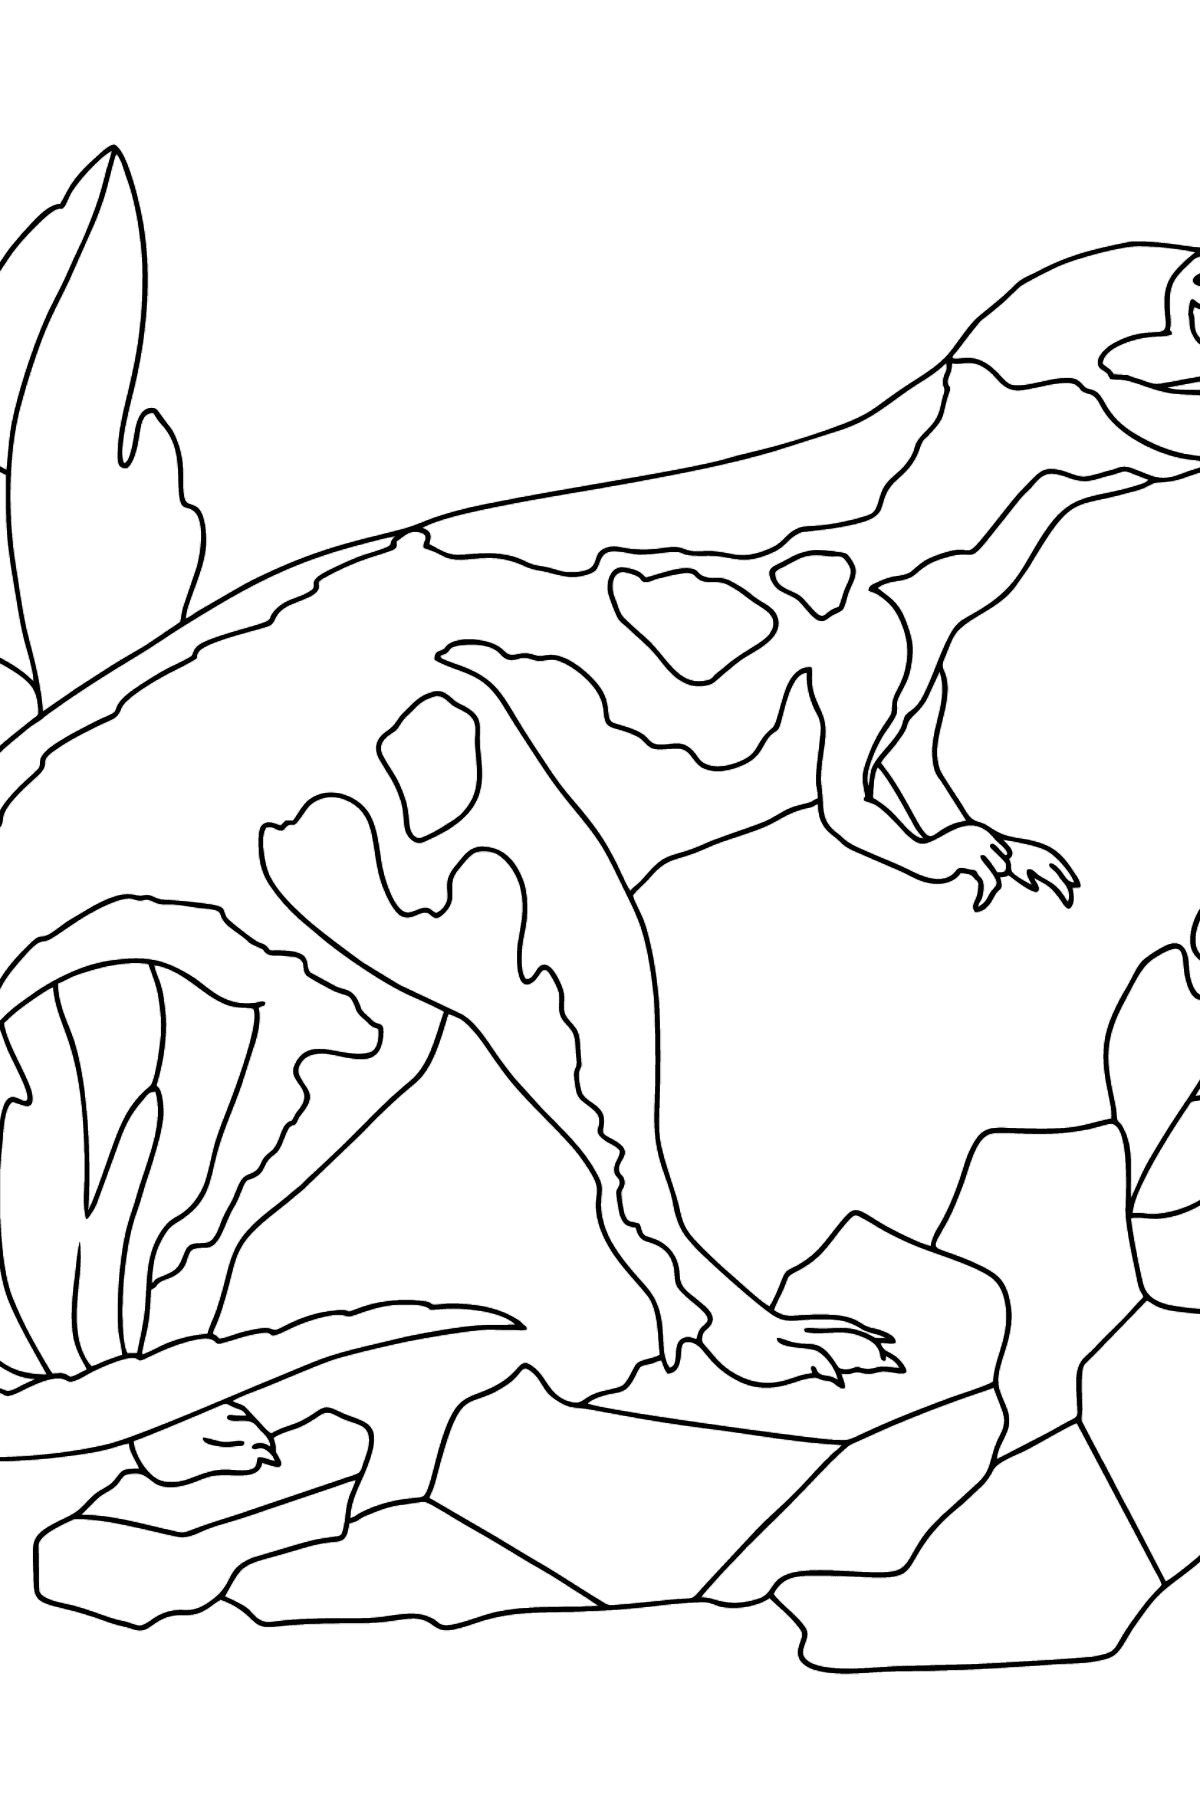 Desenho para colorir Tiranossauro Predator (difícil) - Imagens para Colorir para Crianças